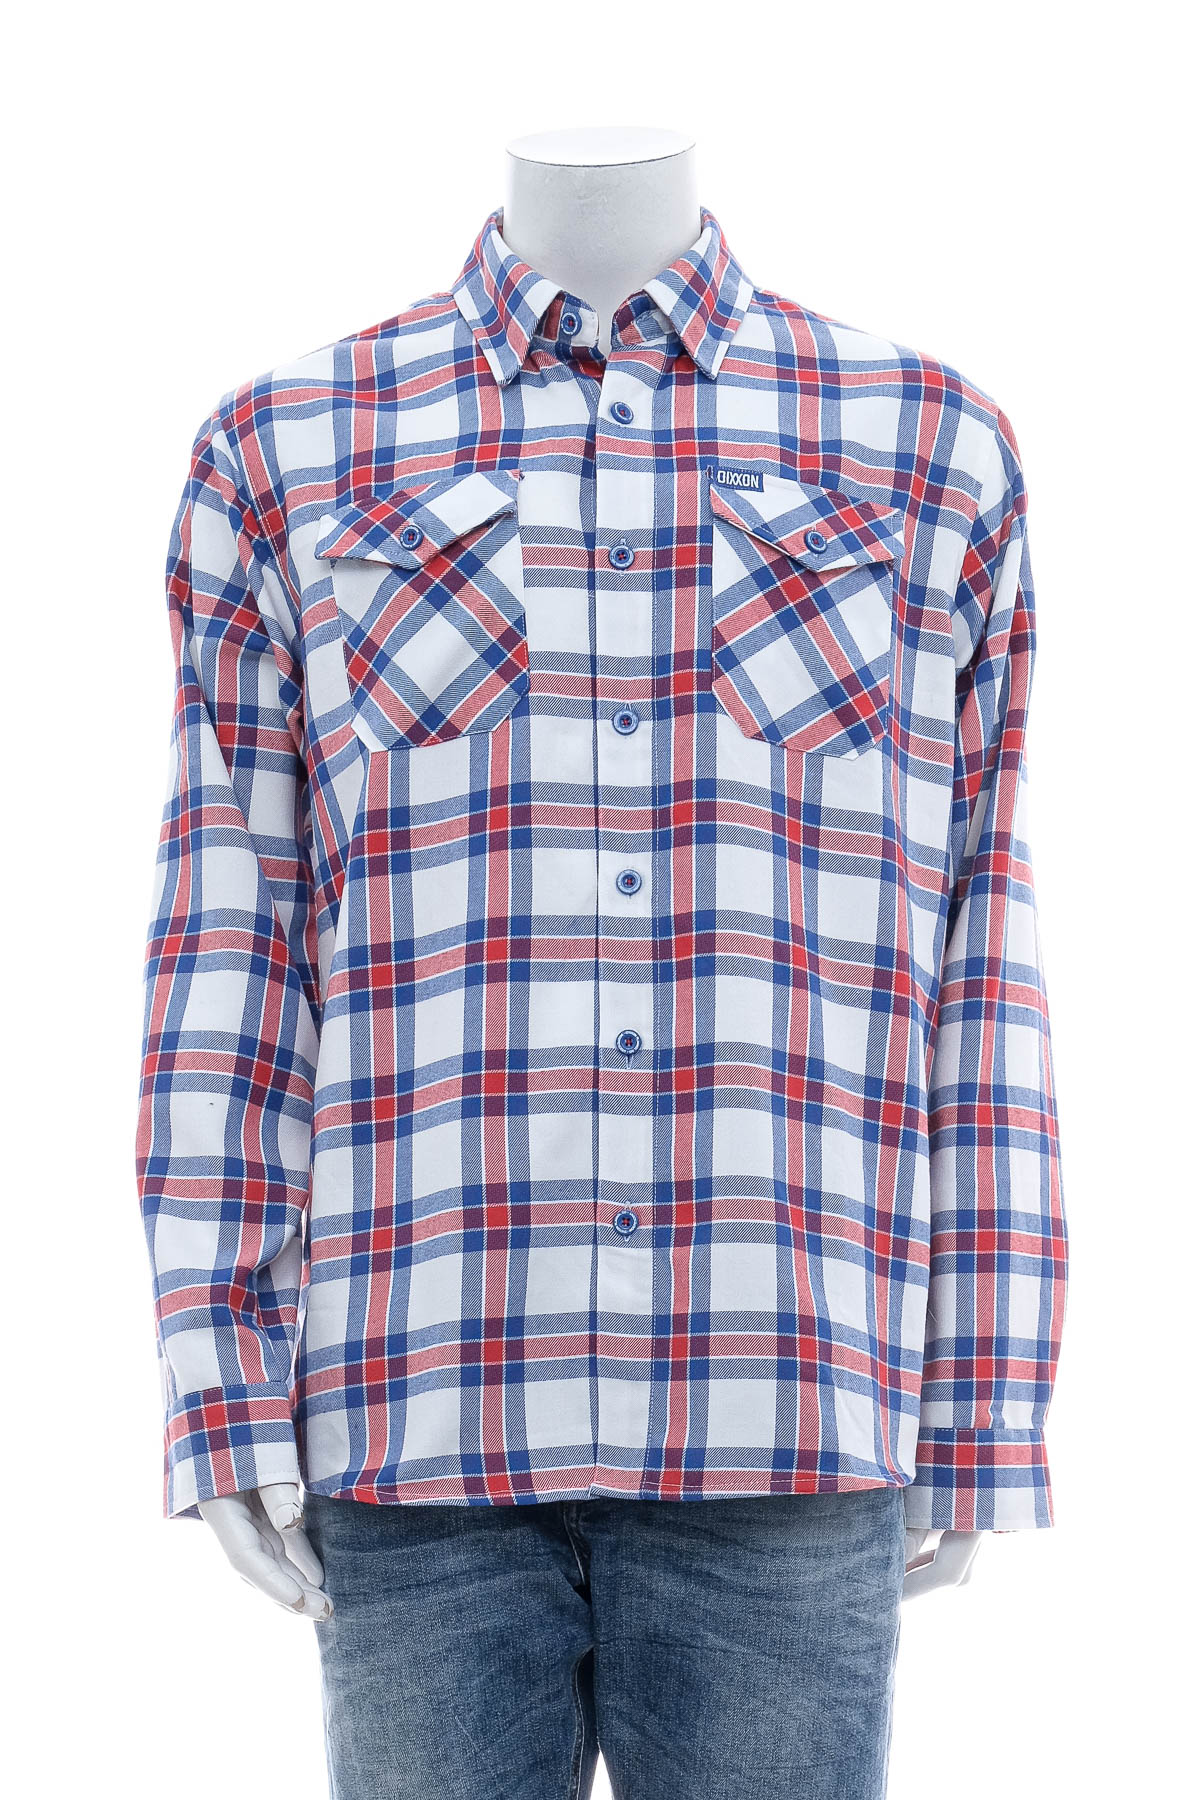 Men's shirt - Dixxon Flannel Co. - 0